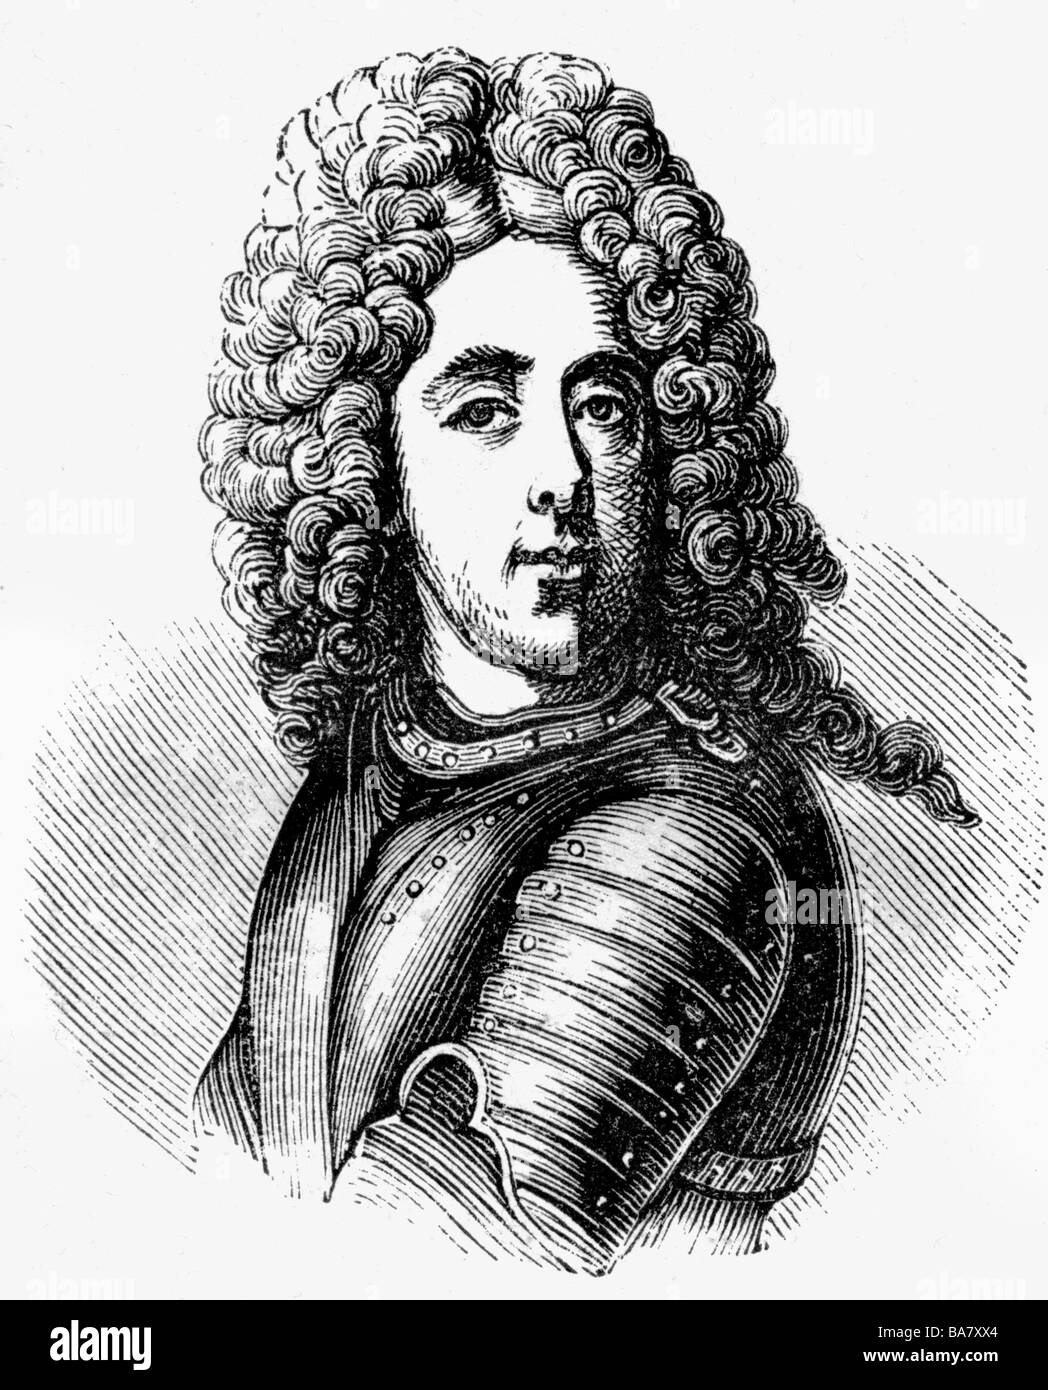 Eugene, 18.10.1663 - 21.4.1736, Fürst von Savoy-Carignan, Kaiserlicher General, Porträt, Holzgravur, 19. Jahrhundert, Stockfoto